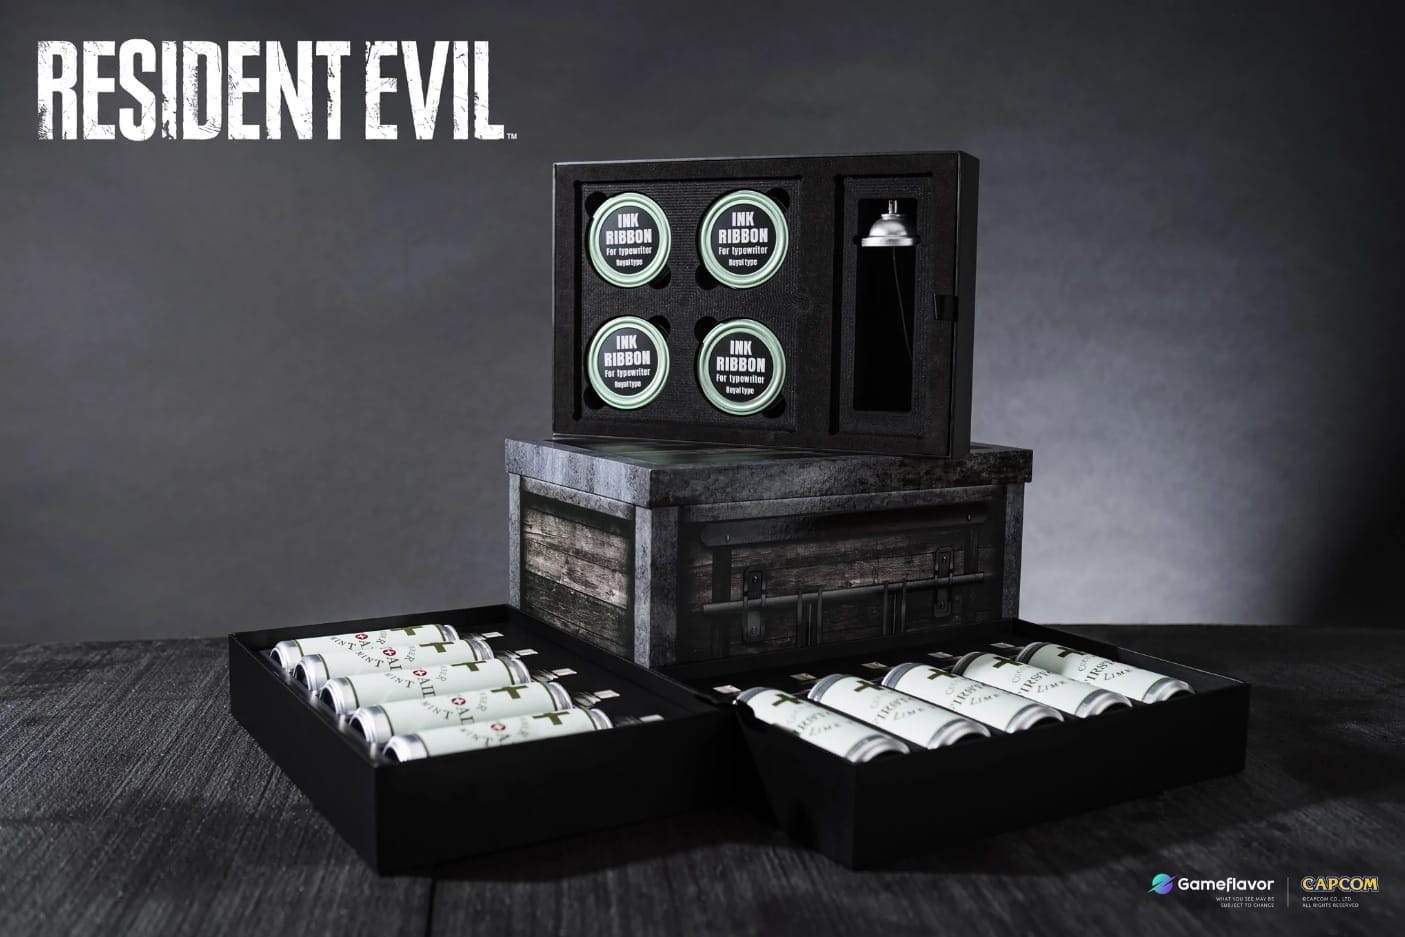 Resident Evil: Ab sofort könnt ihr euch Erste Hilfe-Drinks und mehr für 199 Euro sichern